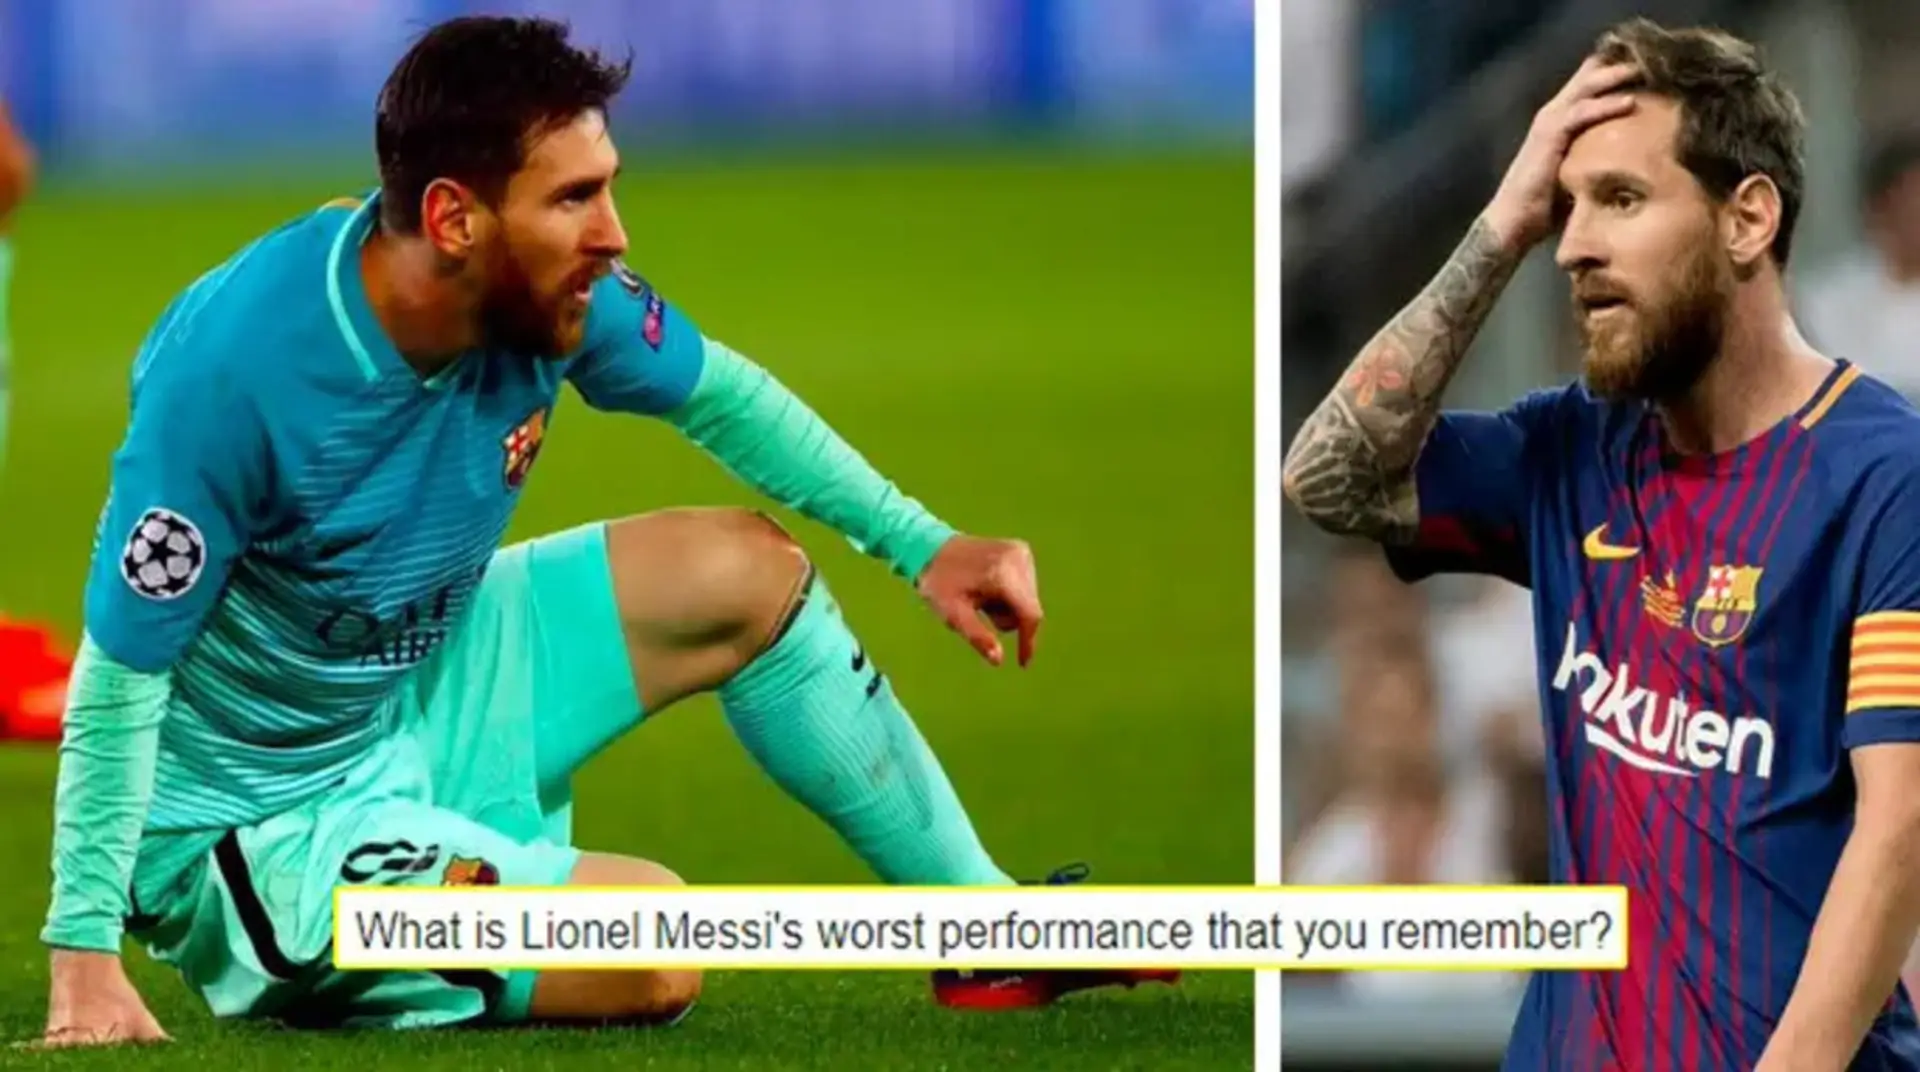 ¿Cuál es el partido peor de Lionel Messi? Tú preguntaste, nosotros respondimos